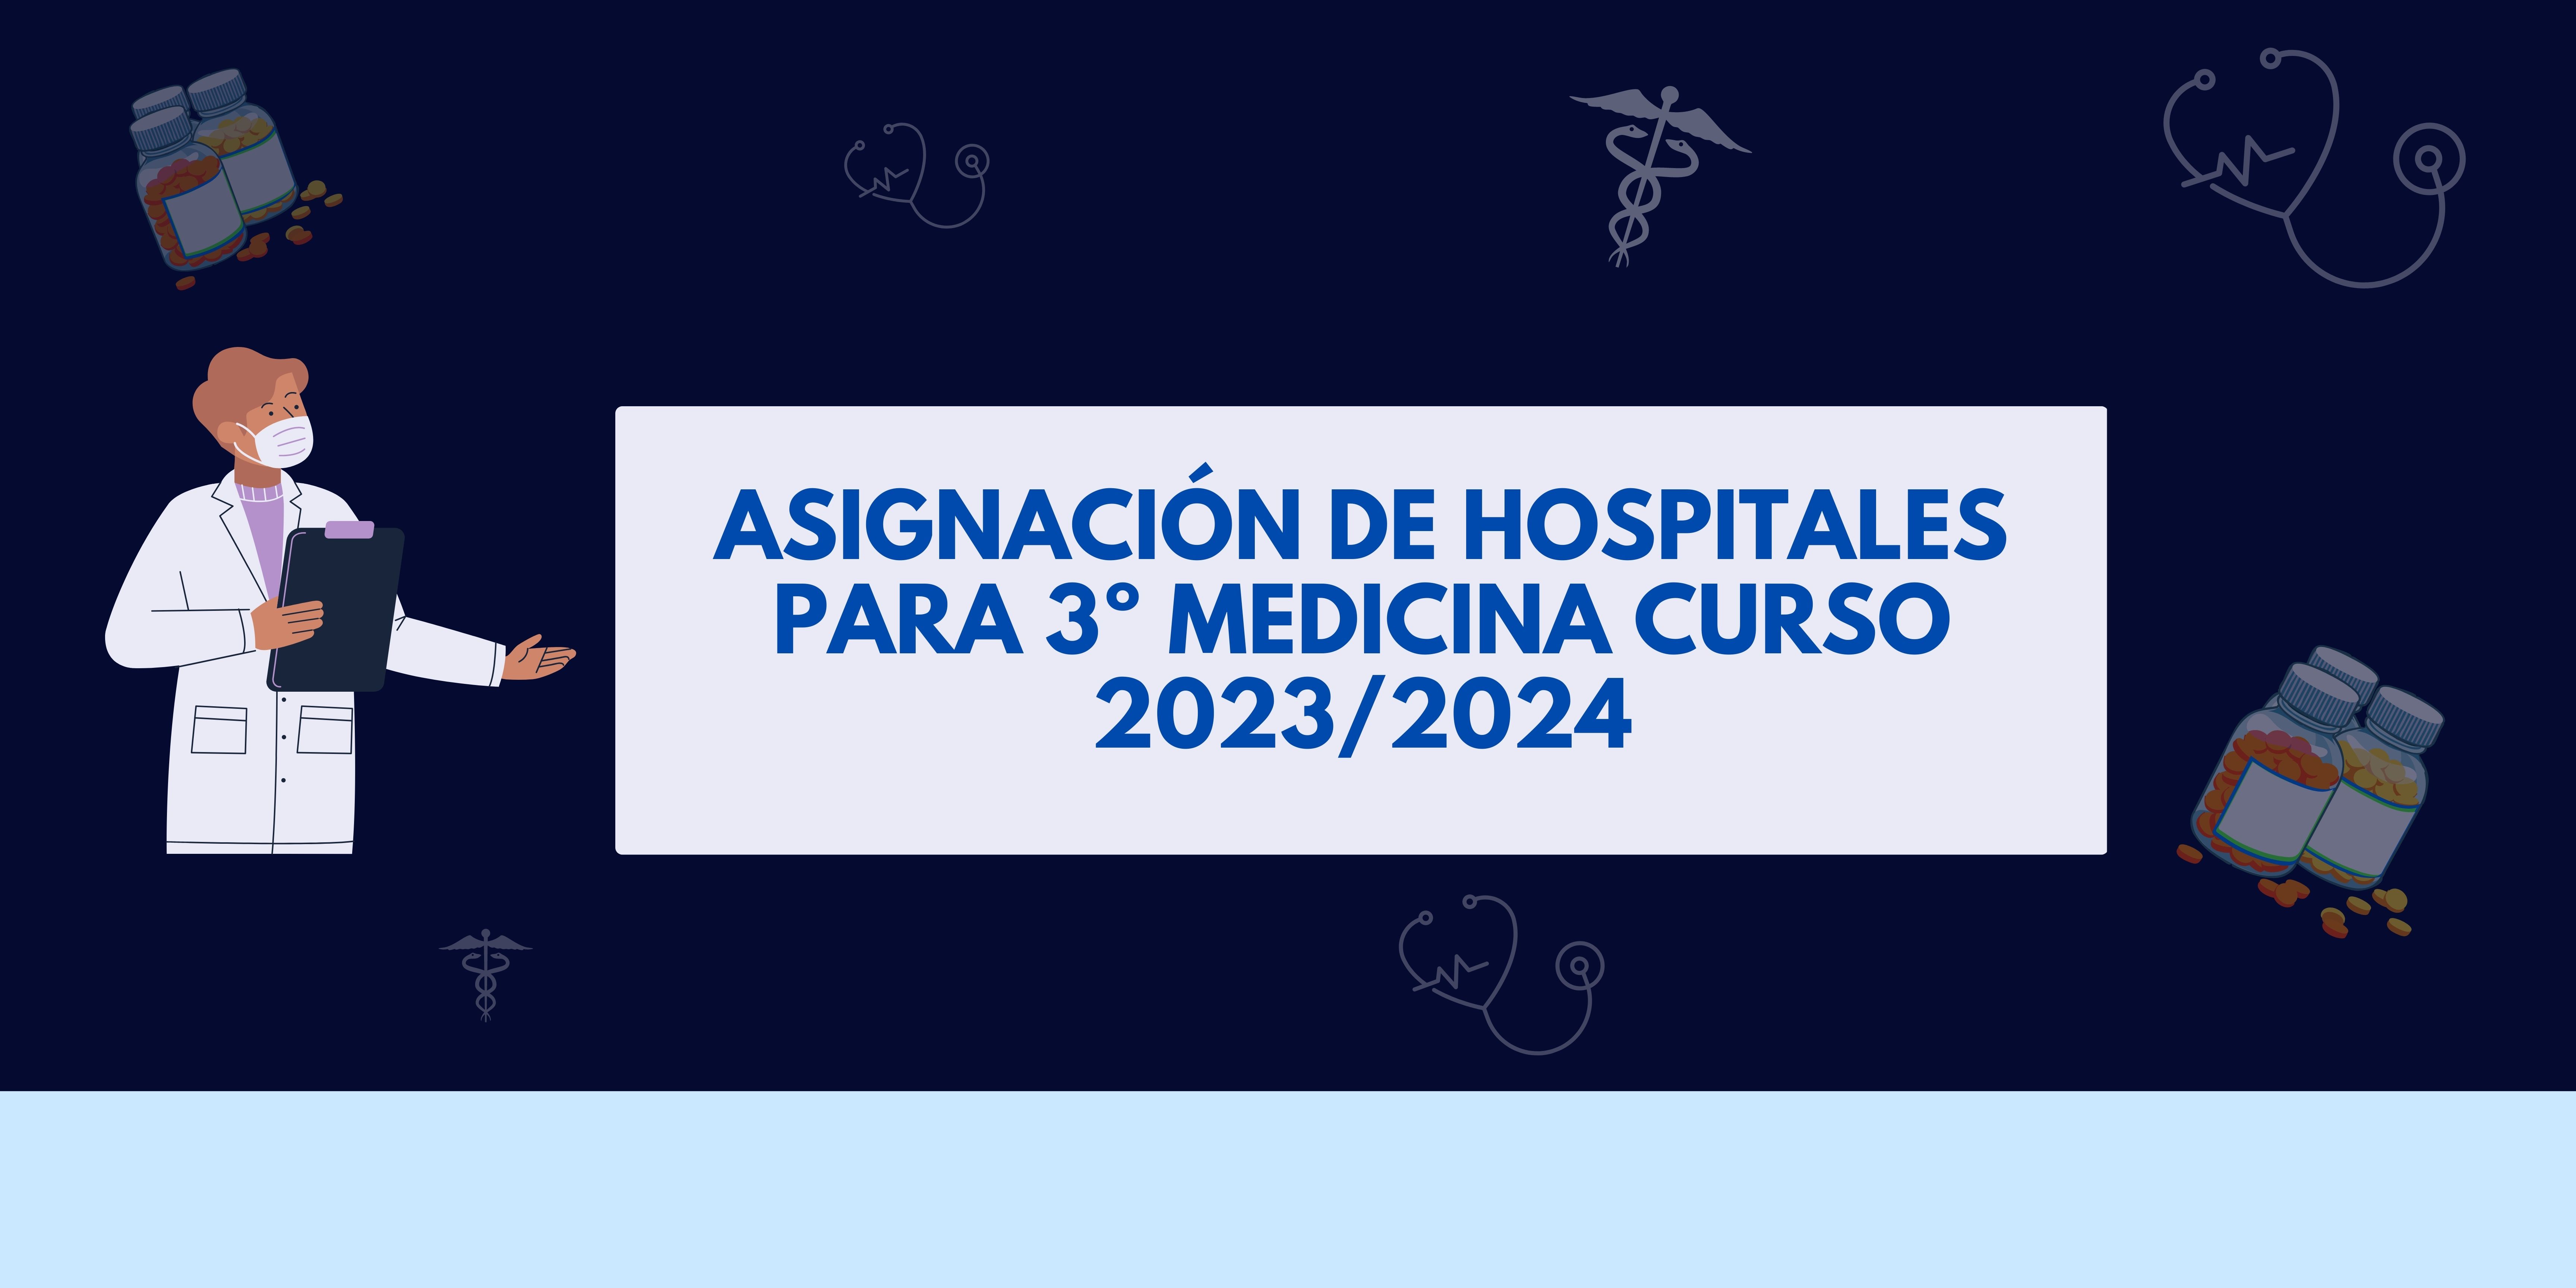 ASIGNACIÓN DE HOSPITALES PARA 3º DE MEDICINA CURSO 2023/2024